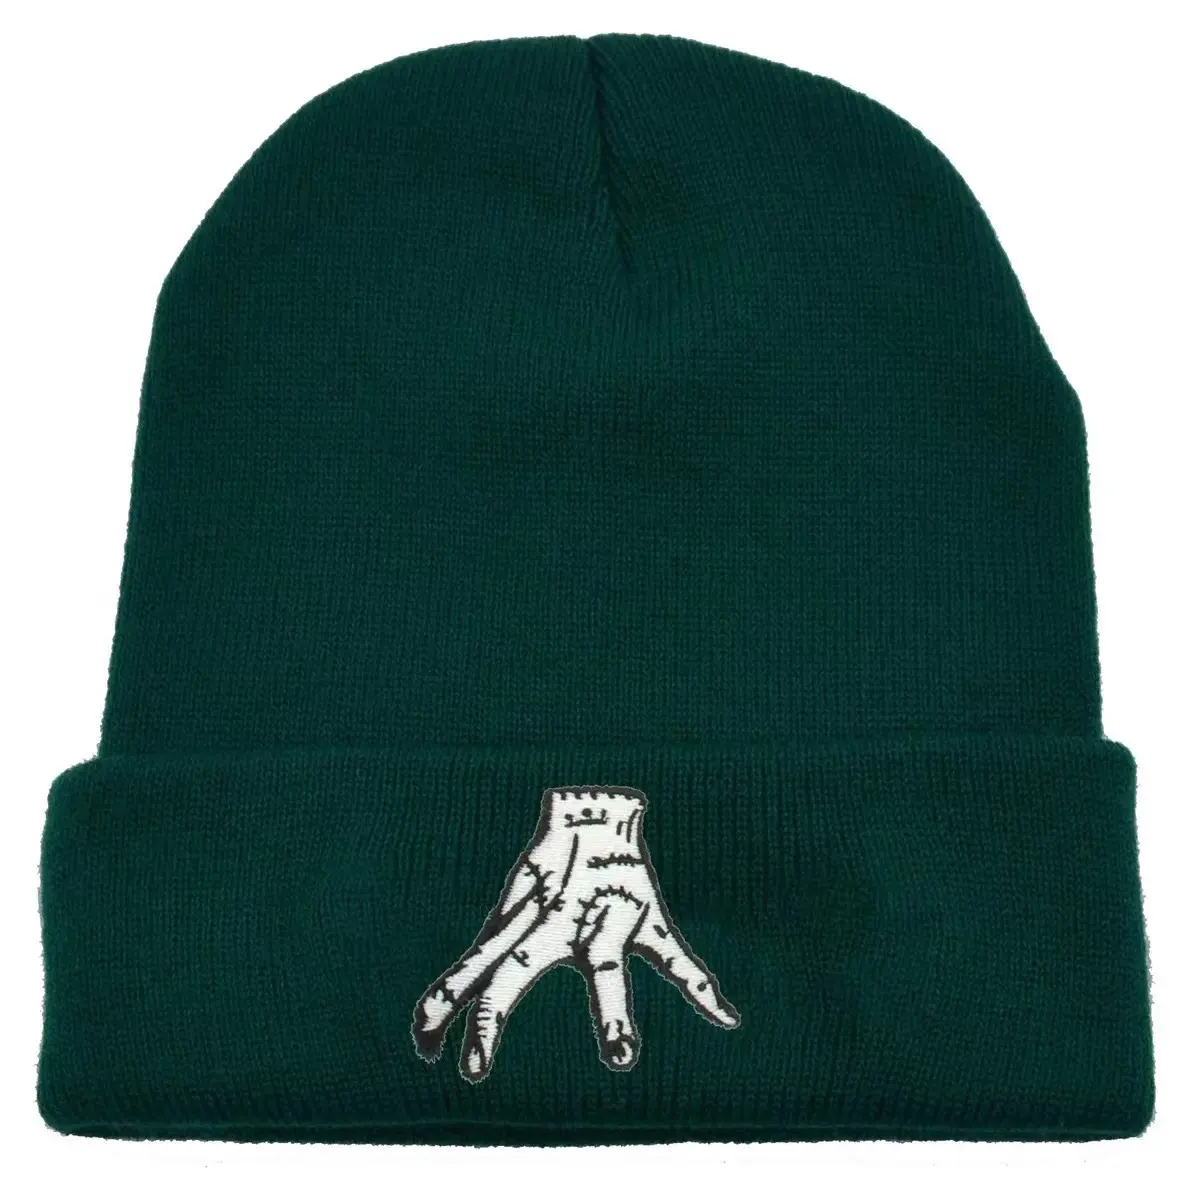 Américain High street fashion adulte chaud sport tricot hiver chapeau tricot chapeau à la coutume